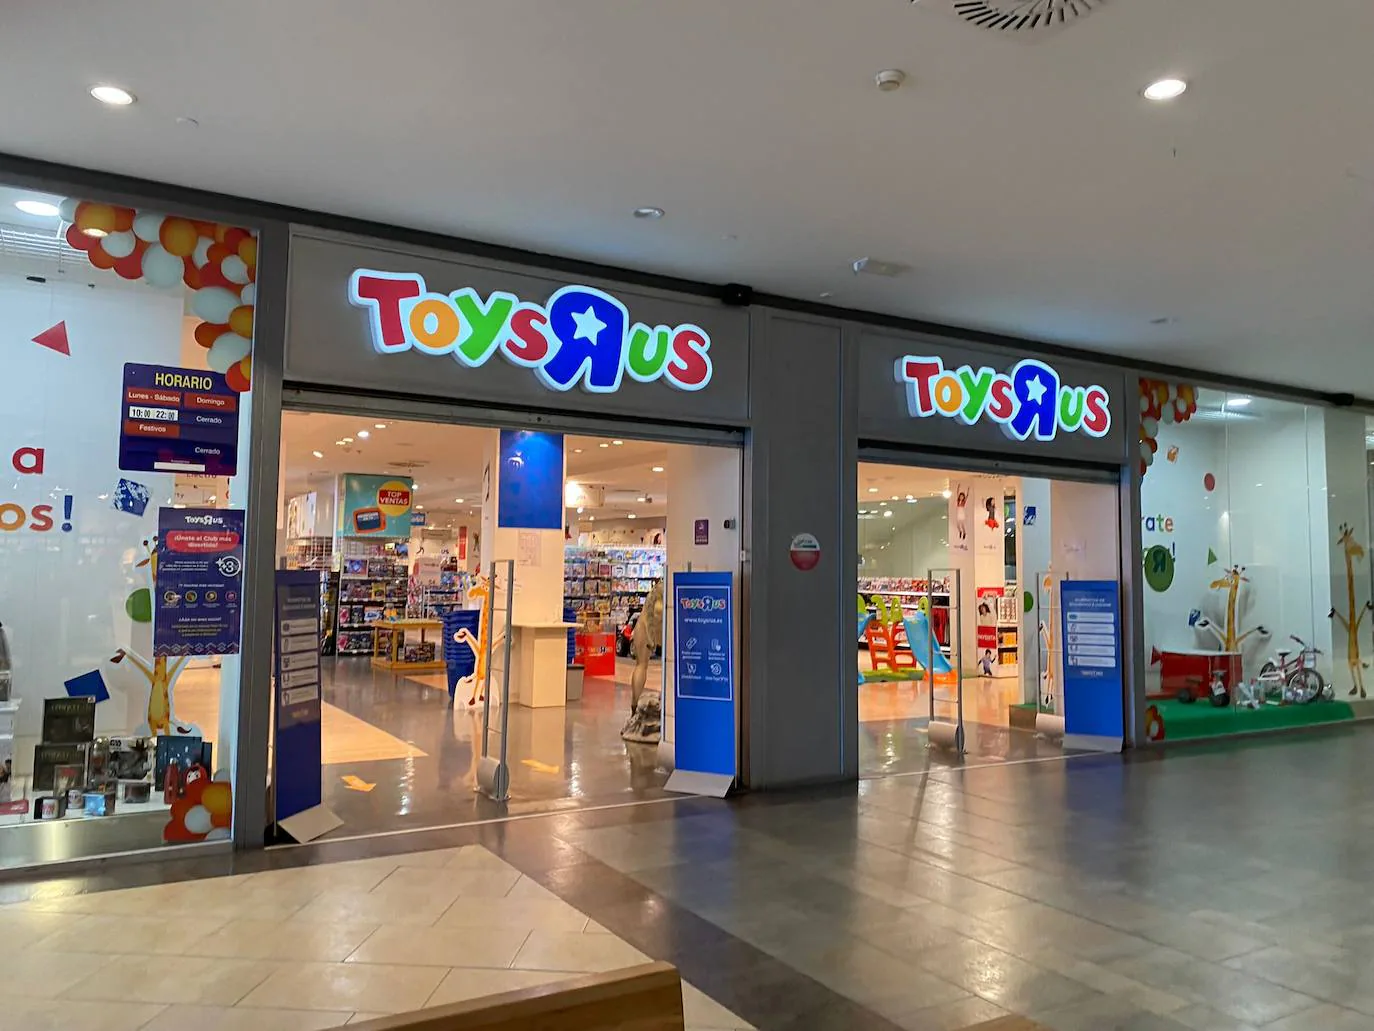 'R' Us planea el cierre de su de juguetes situada en el centro comercial El Rosal de Ponferrada | leonoticias.com